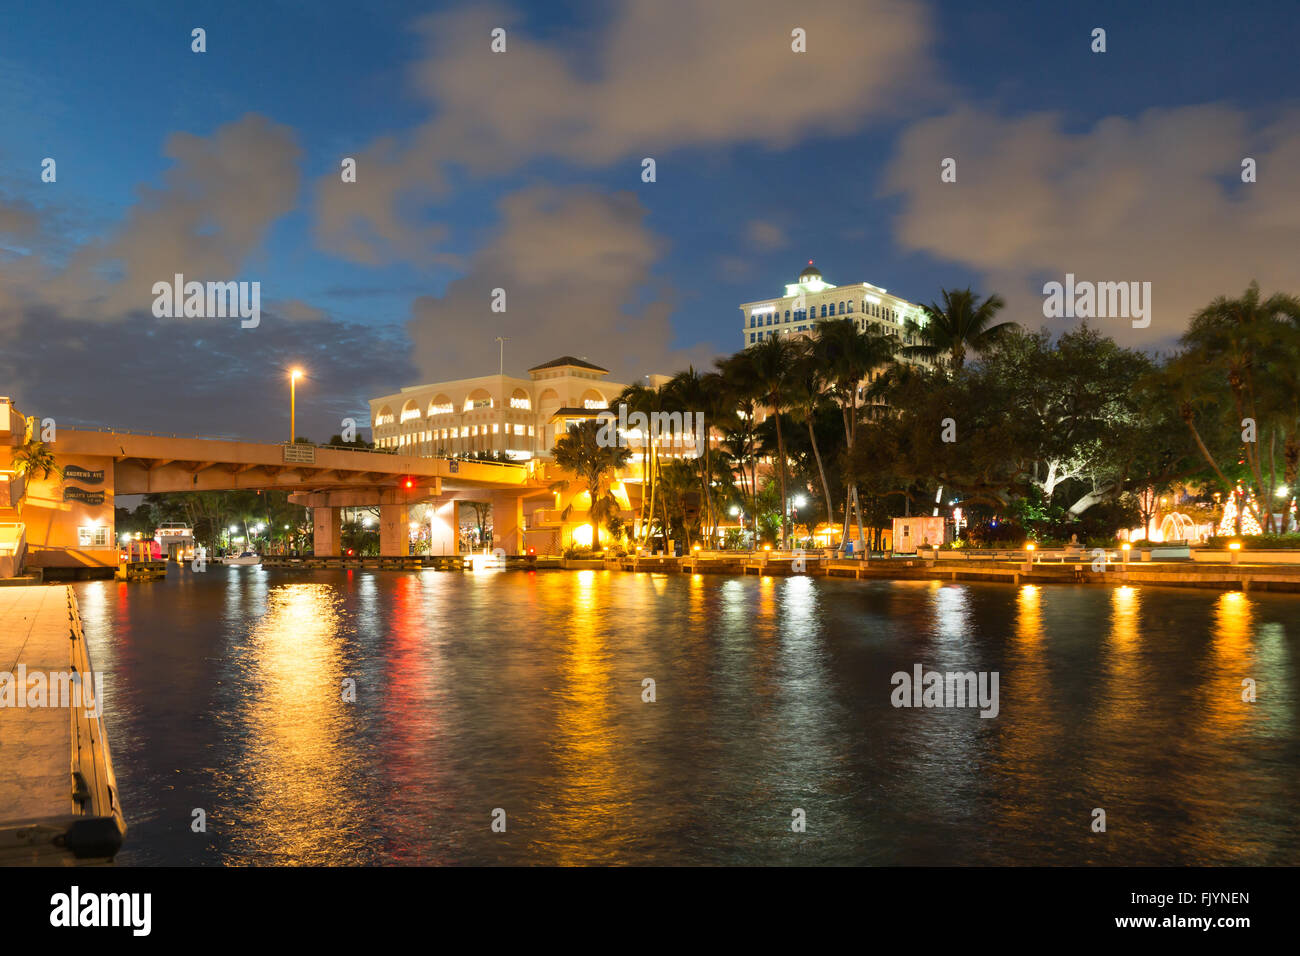 Vista notturna del ponte sul fiume nuovo, Riverwalk promenade e Huizenga Park nel centro di Fort Lauderdale, Florida, Stati Uniti d'America Foto Stock